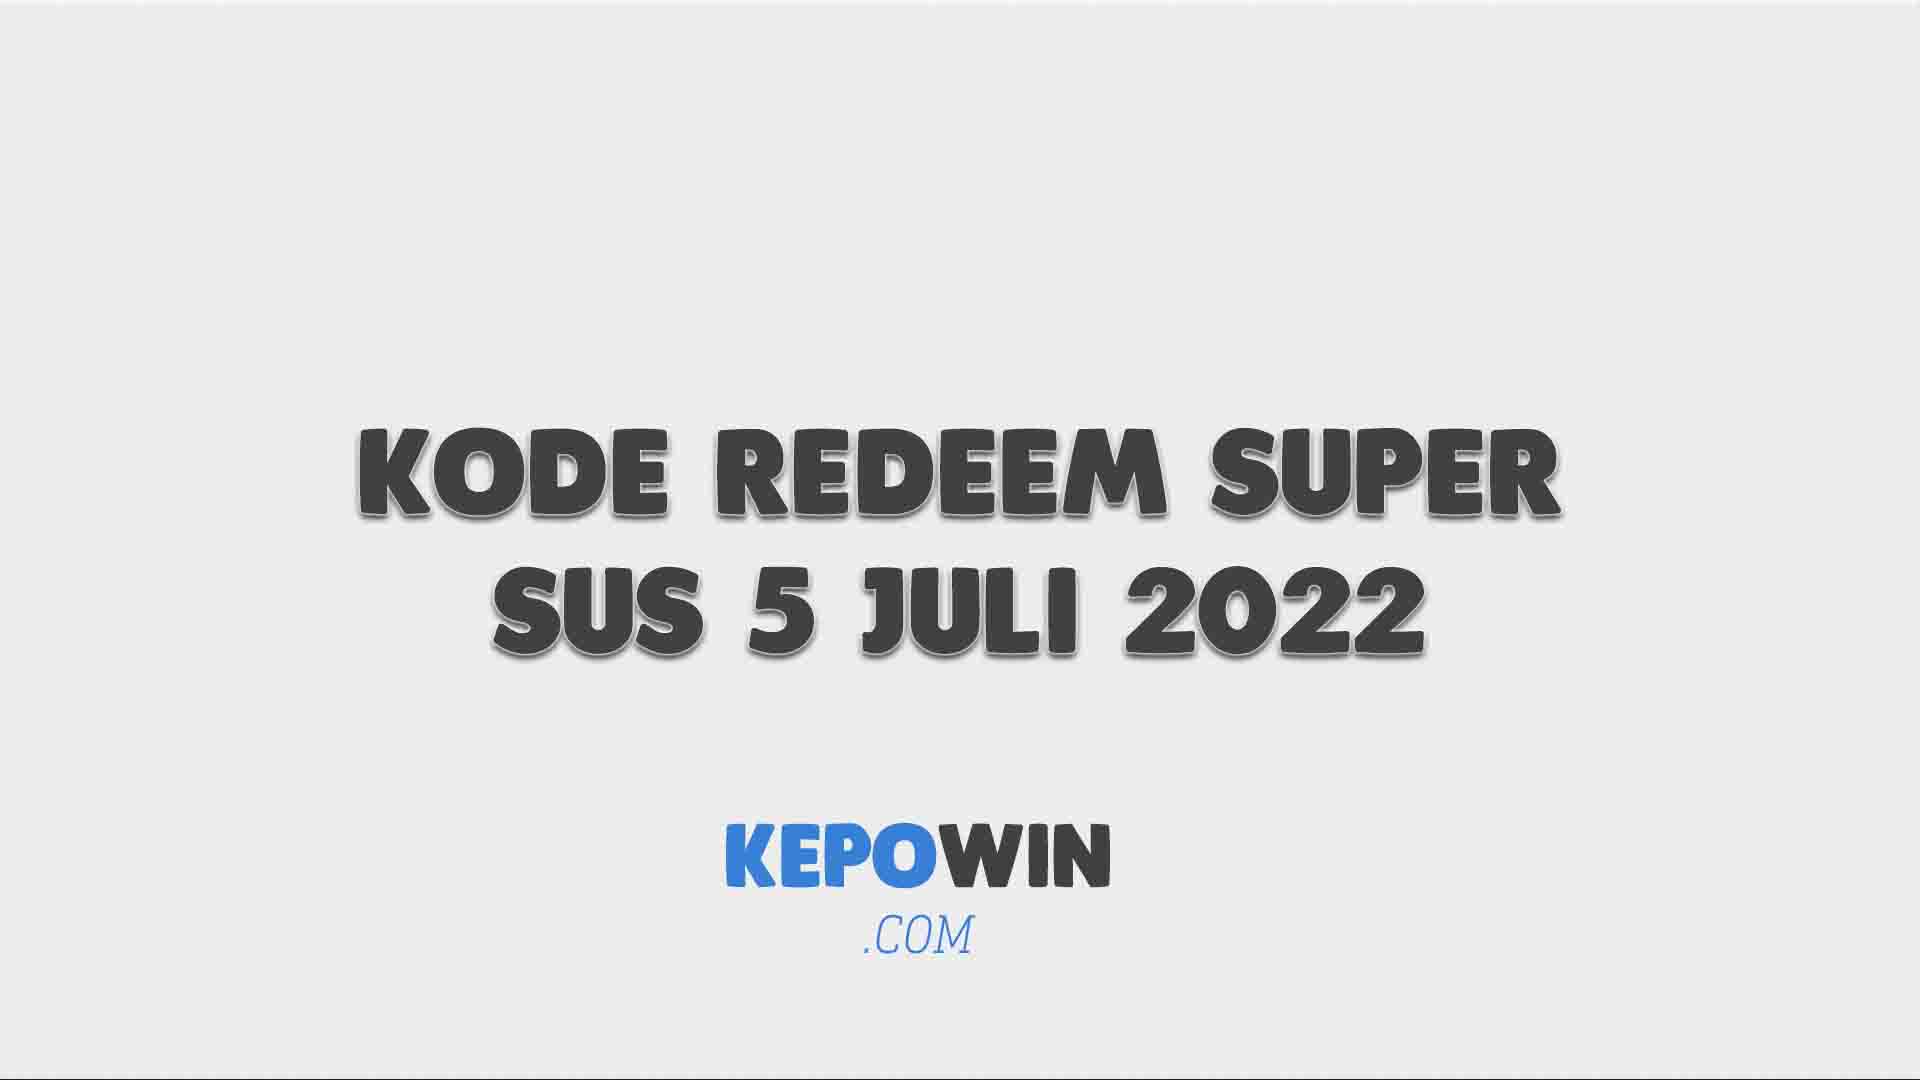 Kode Redeem Super Sus 5 Juli 2022